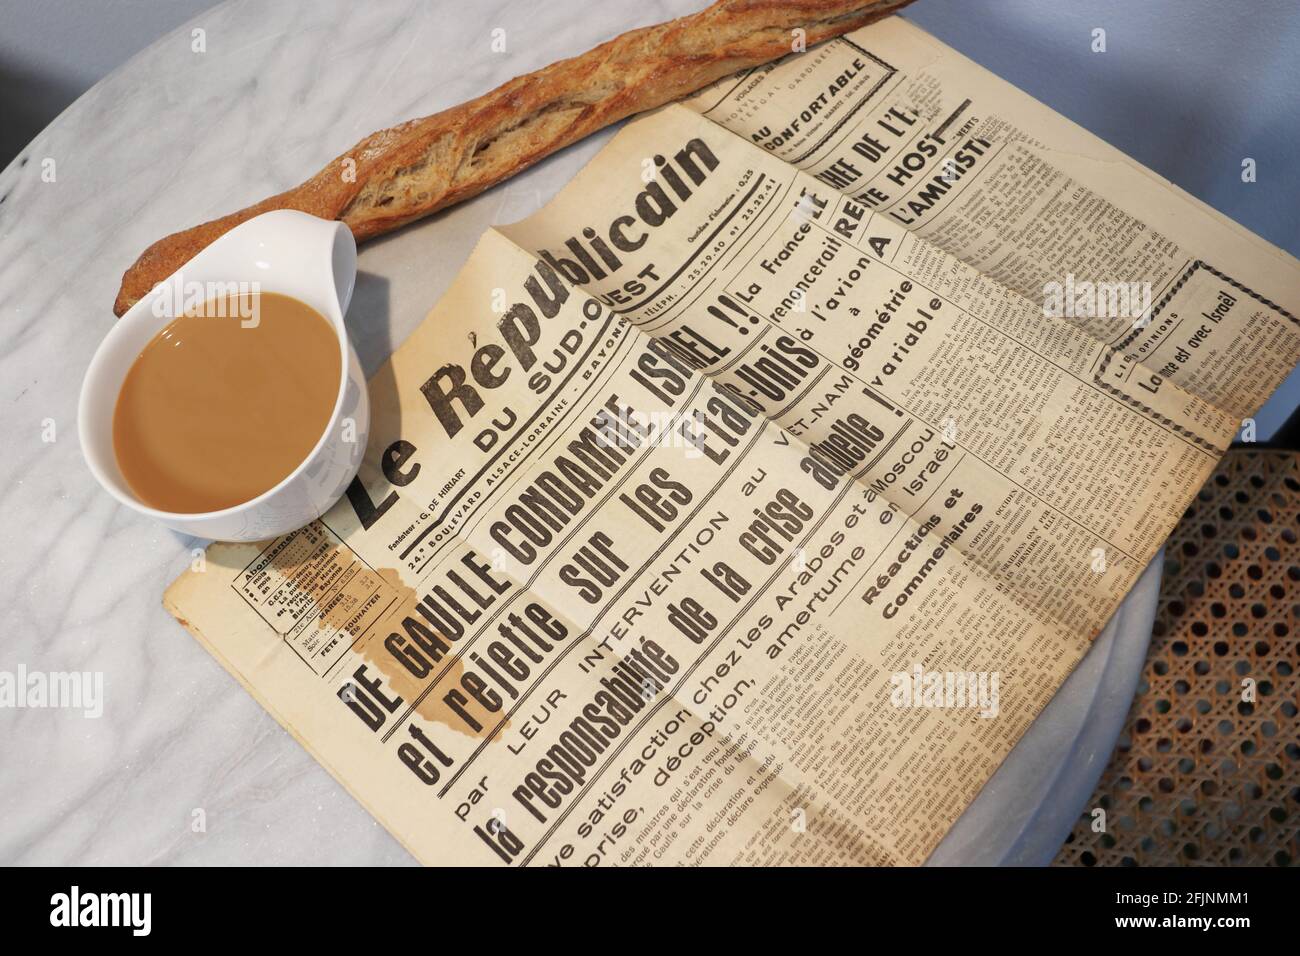 die Zeitung Le Republicain du Sud-Ouest mit der Schlagzeile 'deGaulle verturteilt Israel' liegt am 22.Juni 1967 auf einem Cafe-Tisch in Biarritz, daneben eine Tasse Cafe-au-lait und ein Baguette 'Parisienne', Kaffe-Fleck auf der Zeitung * French newspaper 'Le Rublicain' of June 22,1967 on a coffeetable mit a cup of cafe-au-lait and  baguette with top headline 'deGaulle condemns Israel' Stock Photo